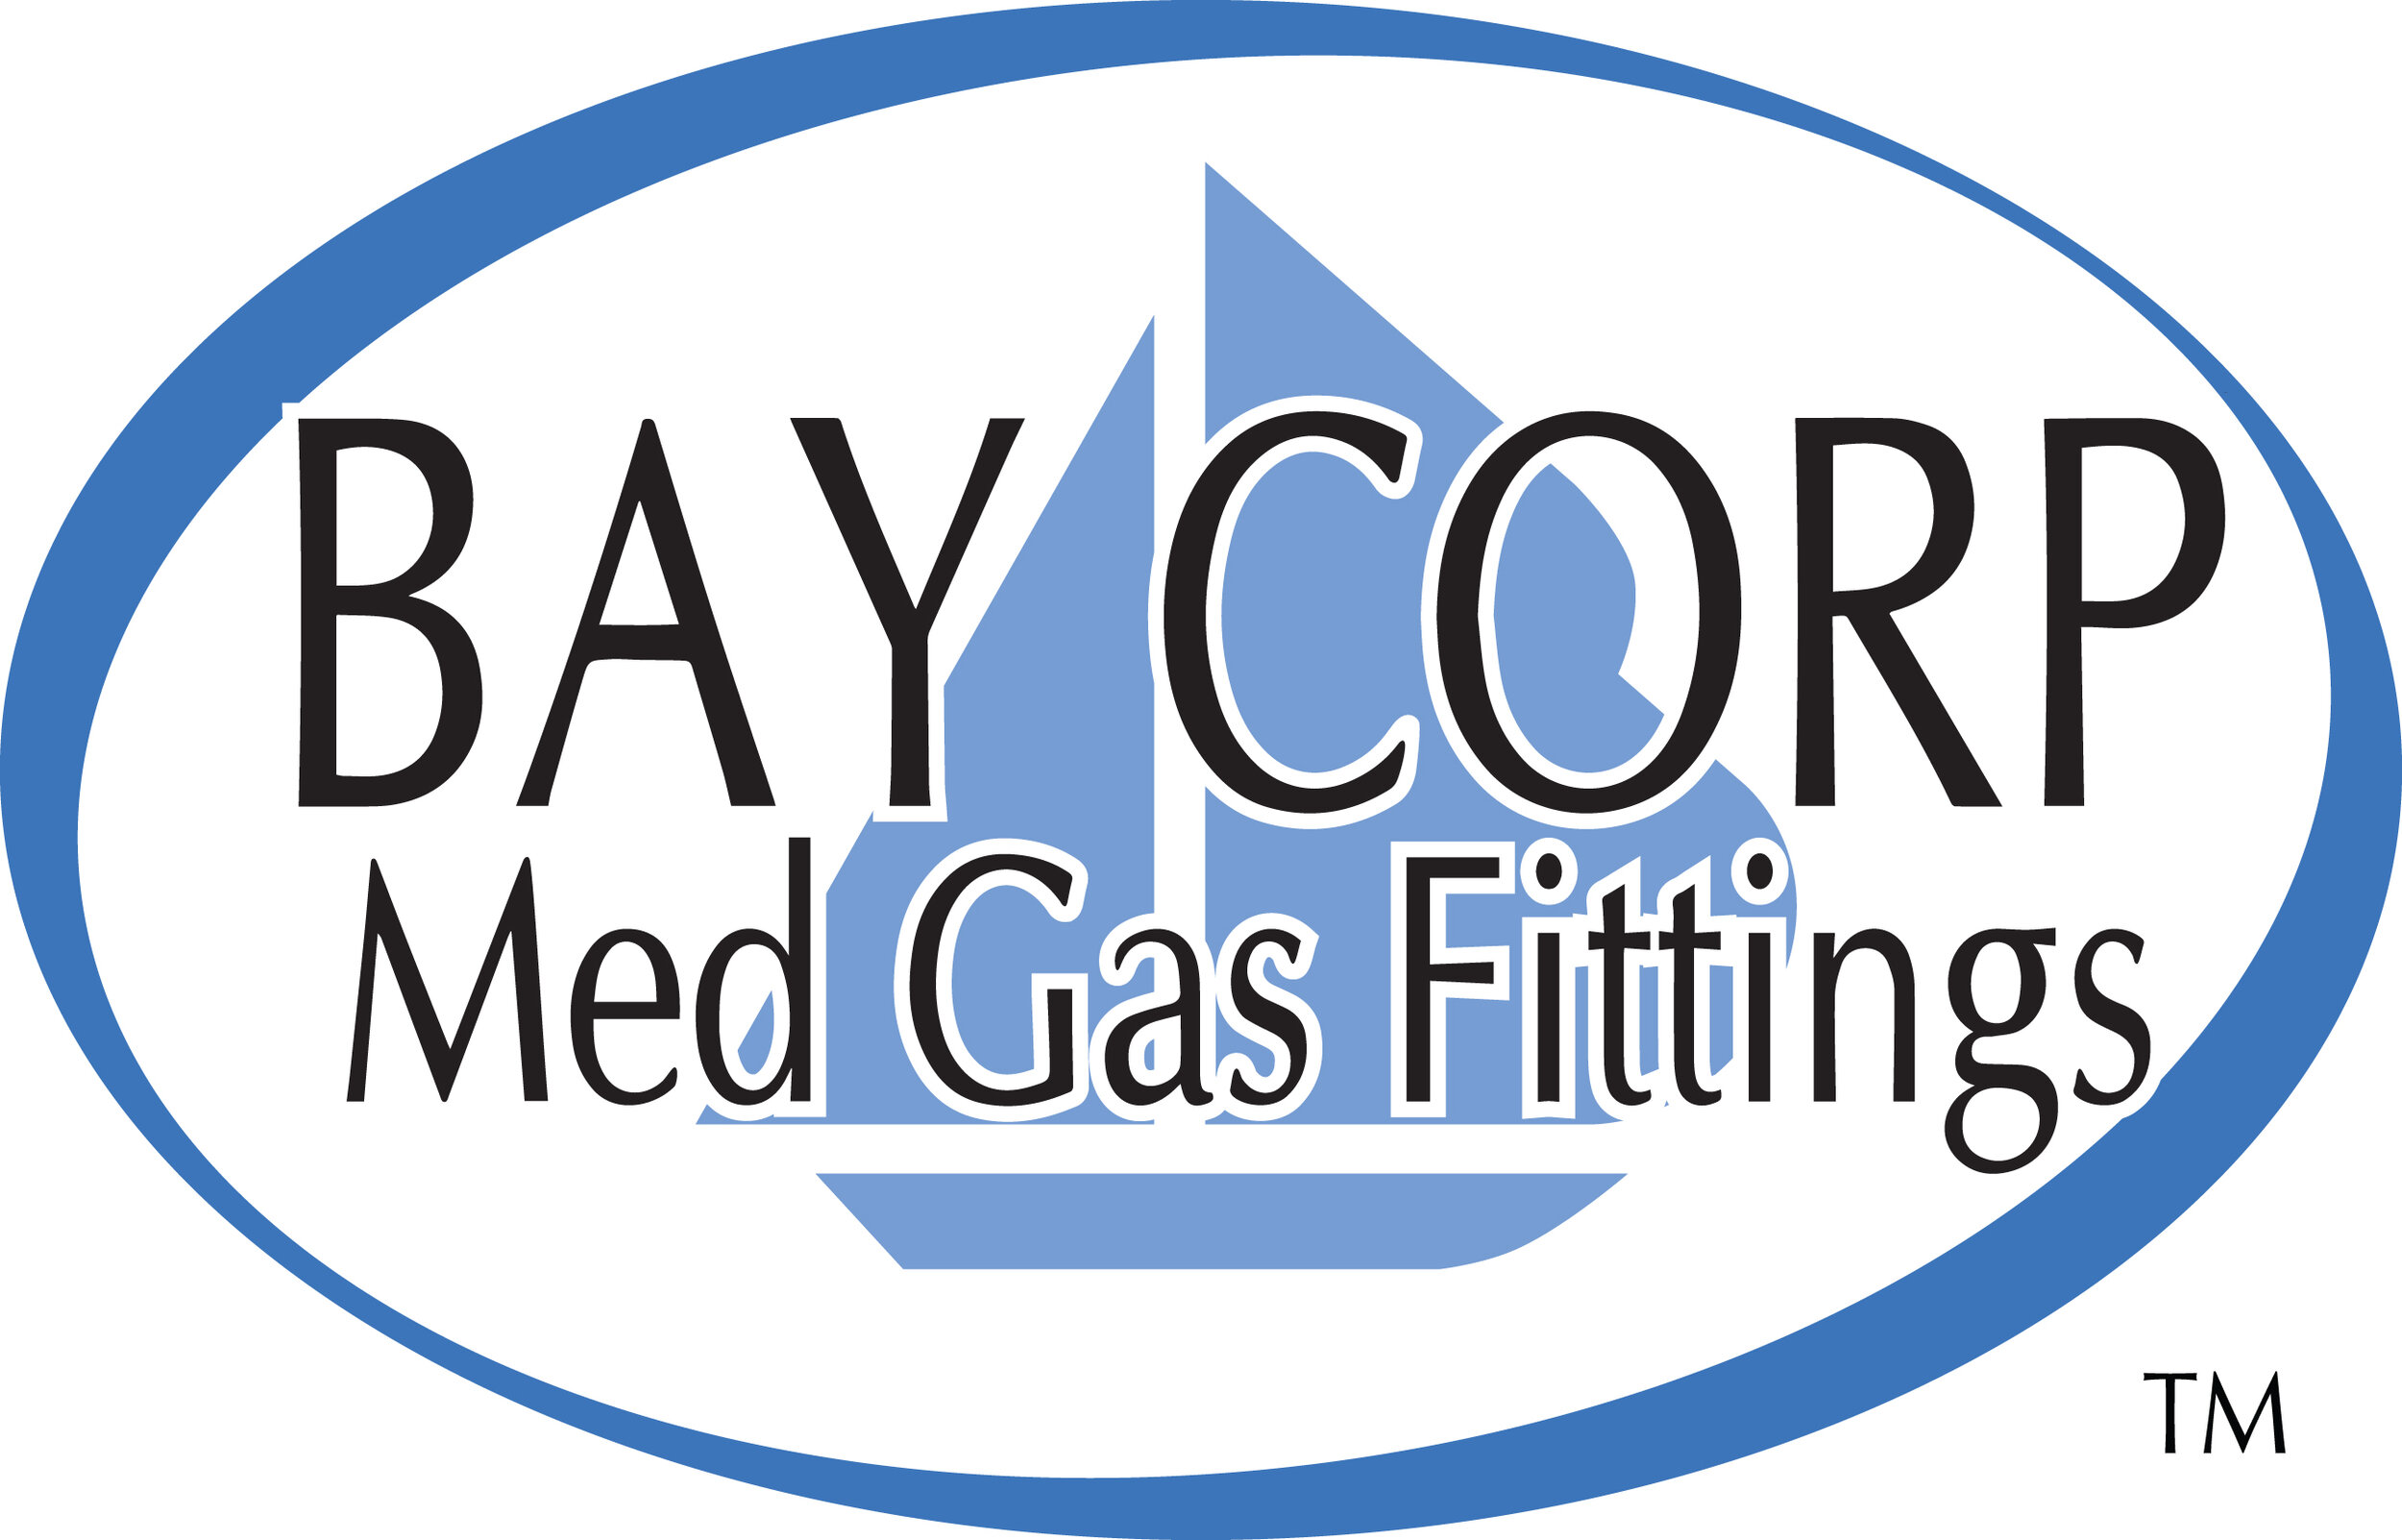 Bay Corp logo.jpg